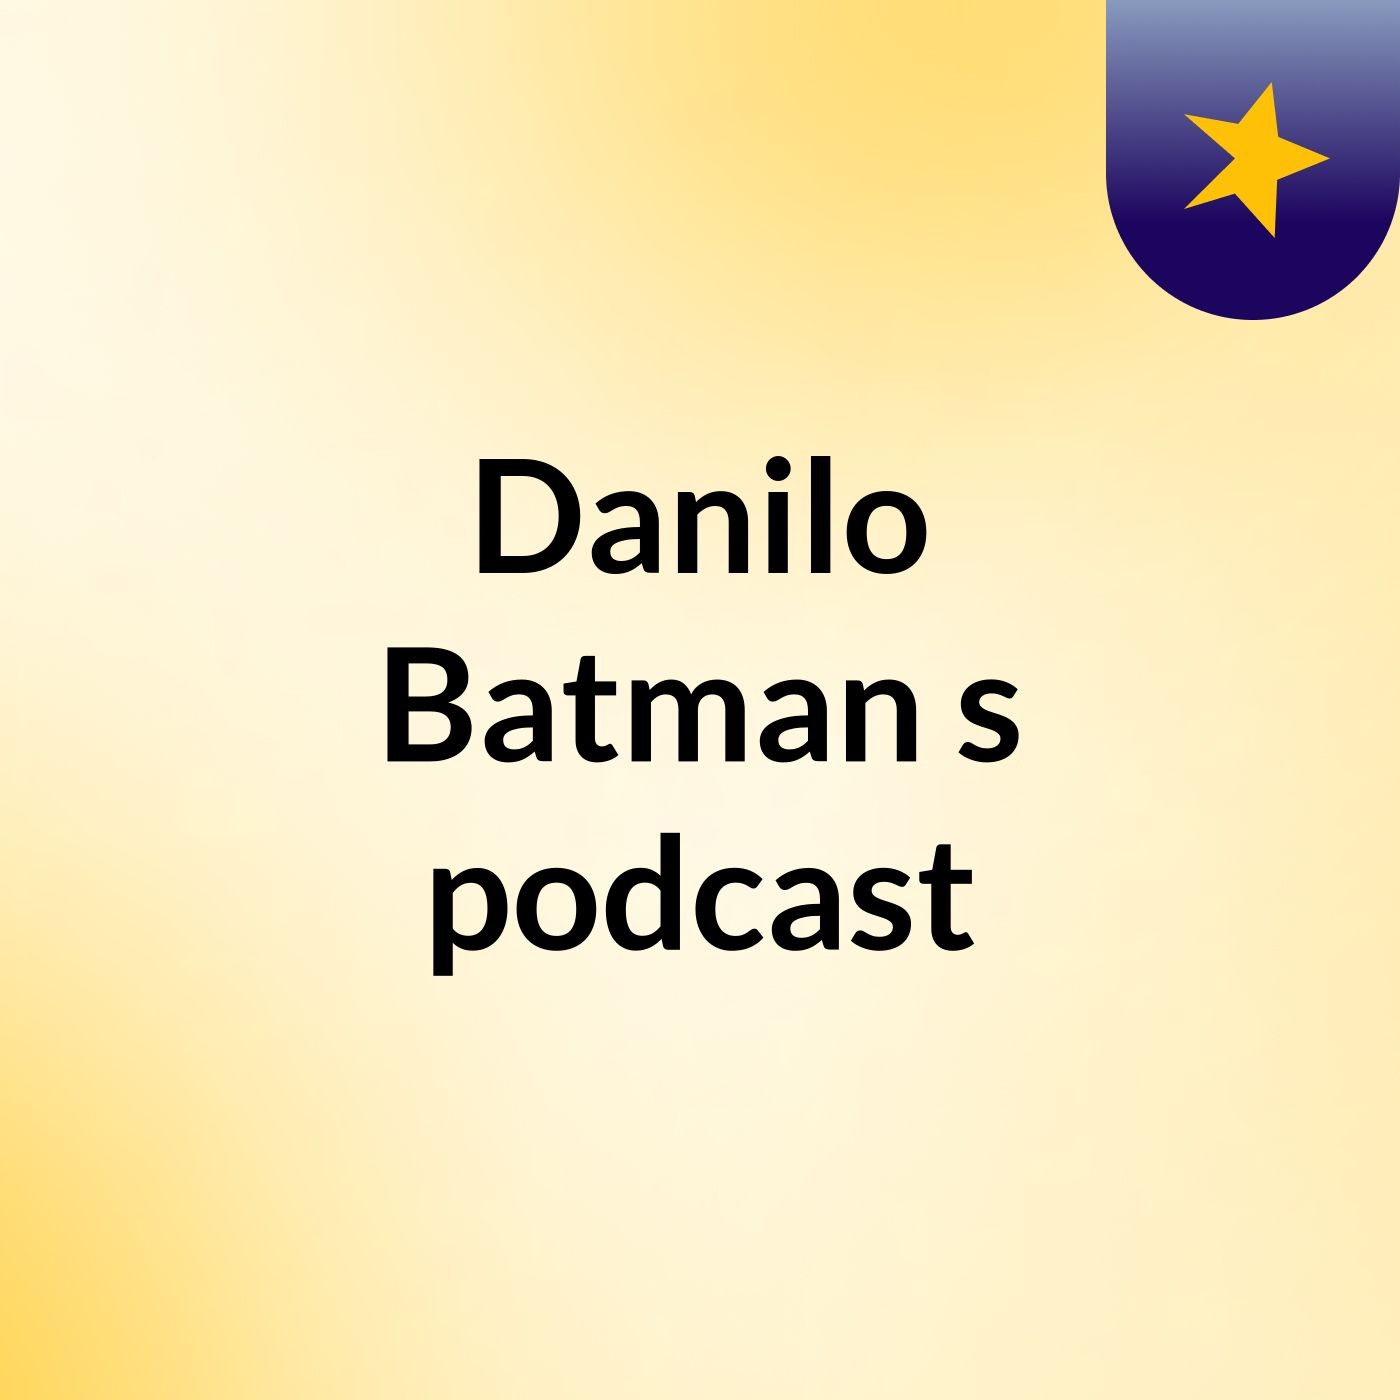 Danilo Batman's podcast